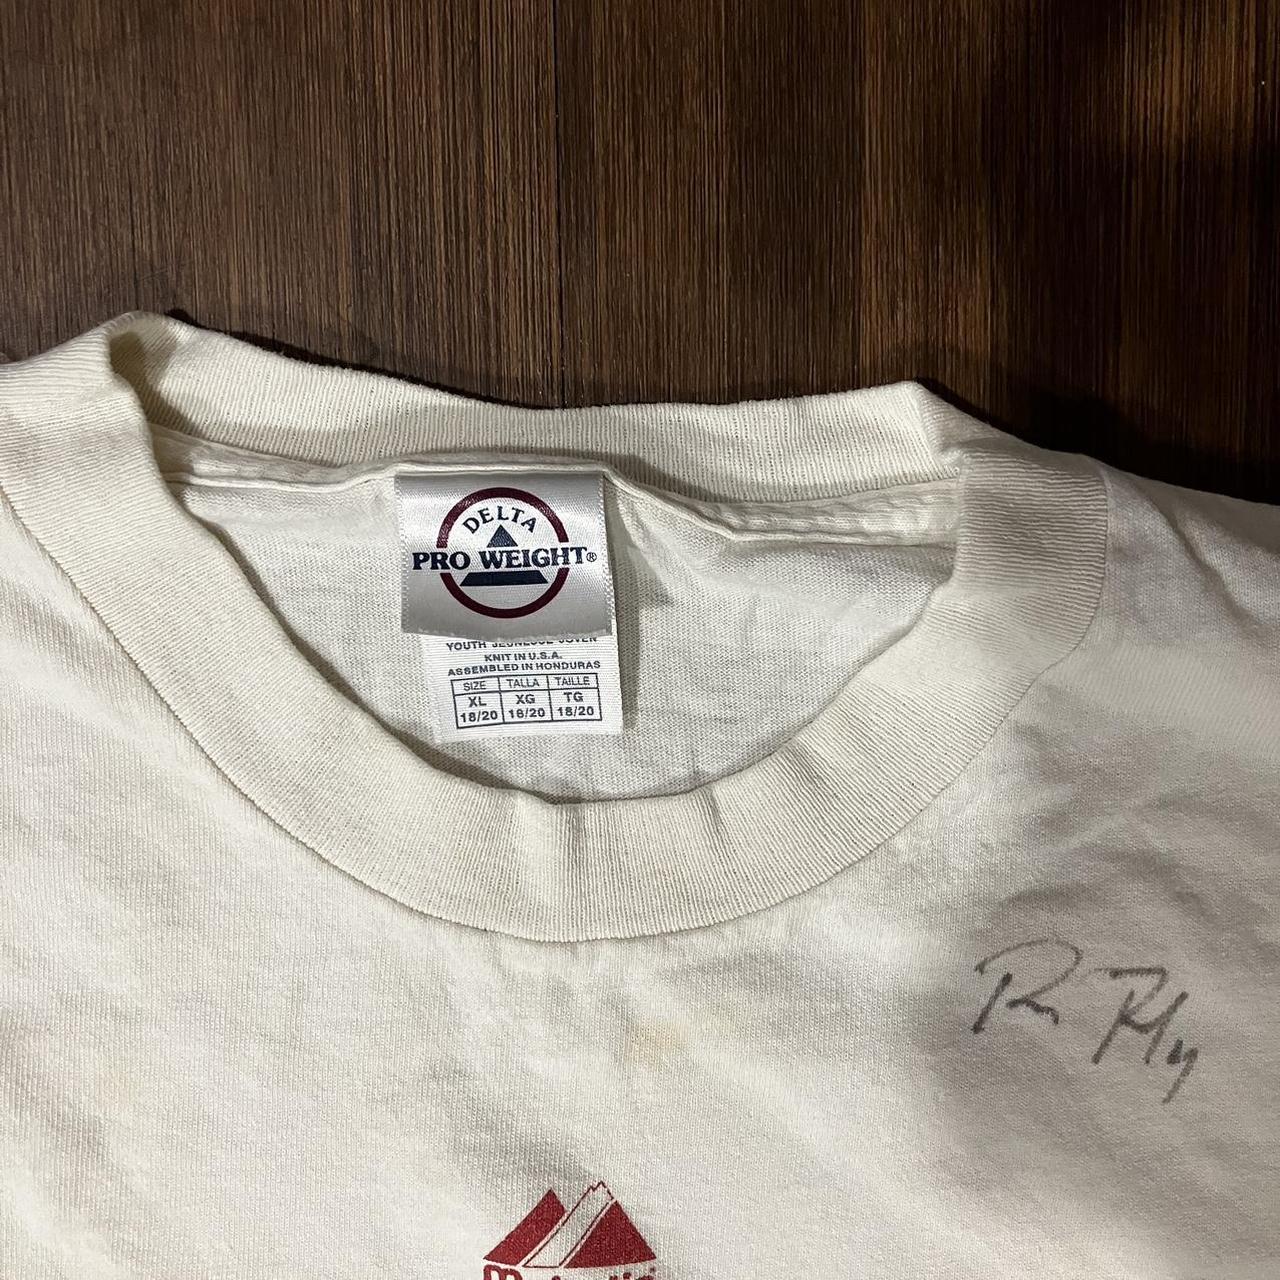 Arizona Diamondbacks DBacks Youth T-Shirt. Size M Autographed By Baxter